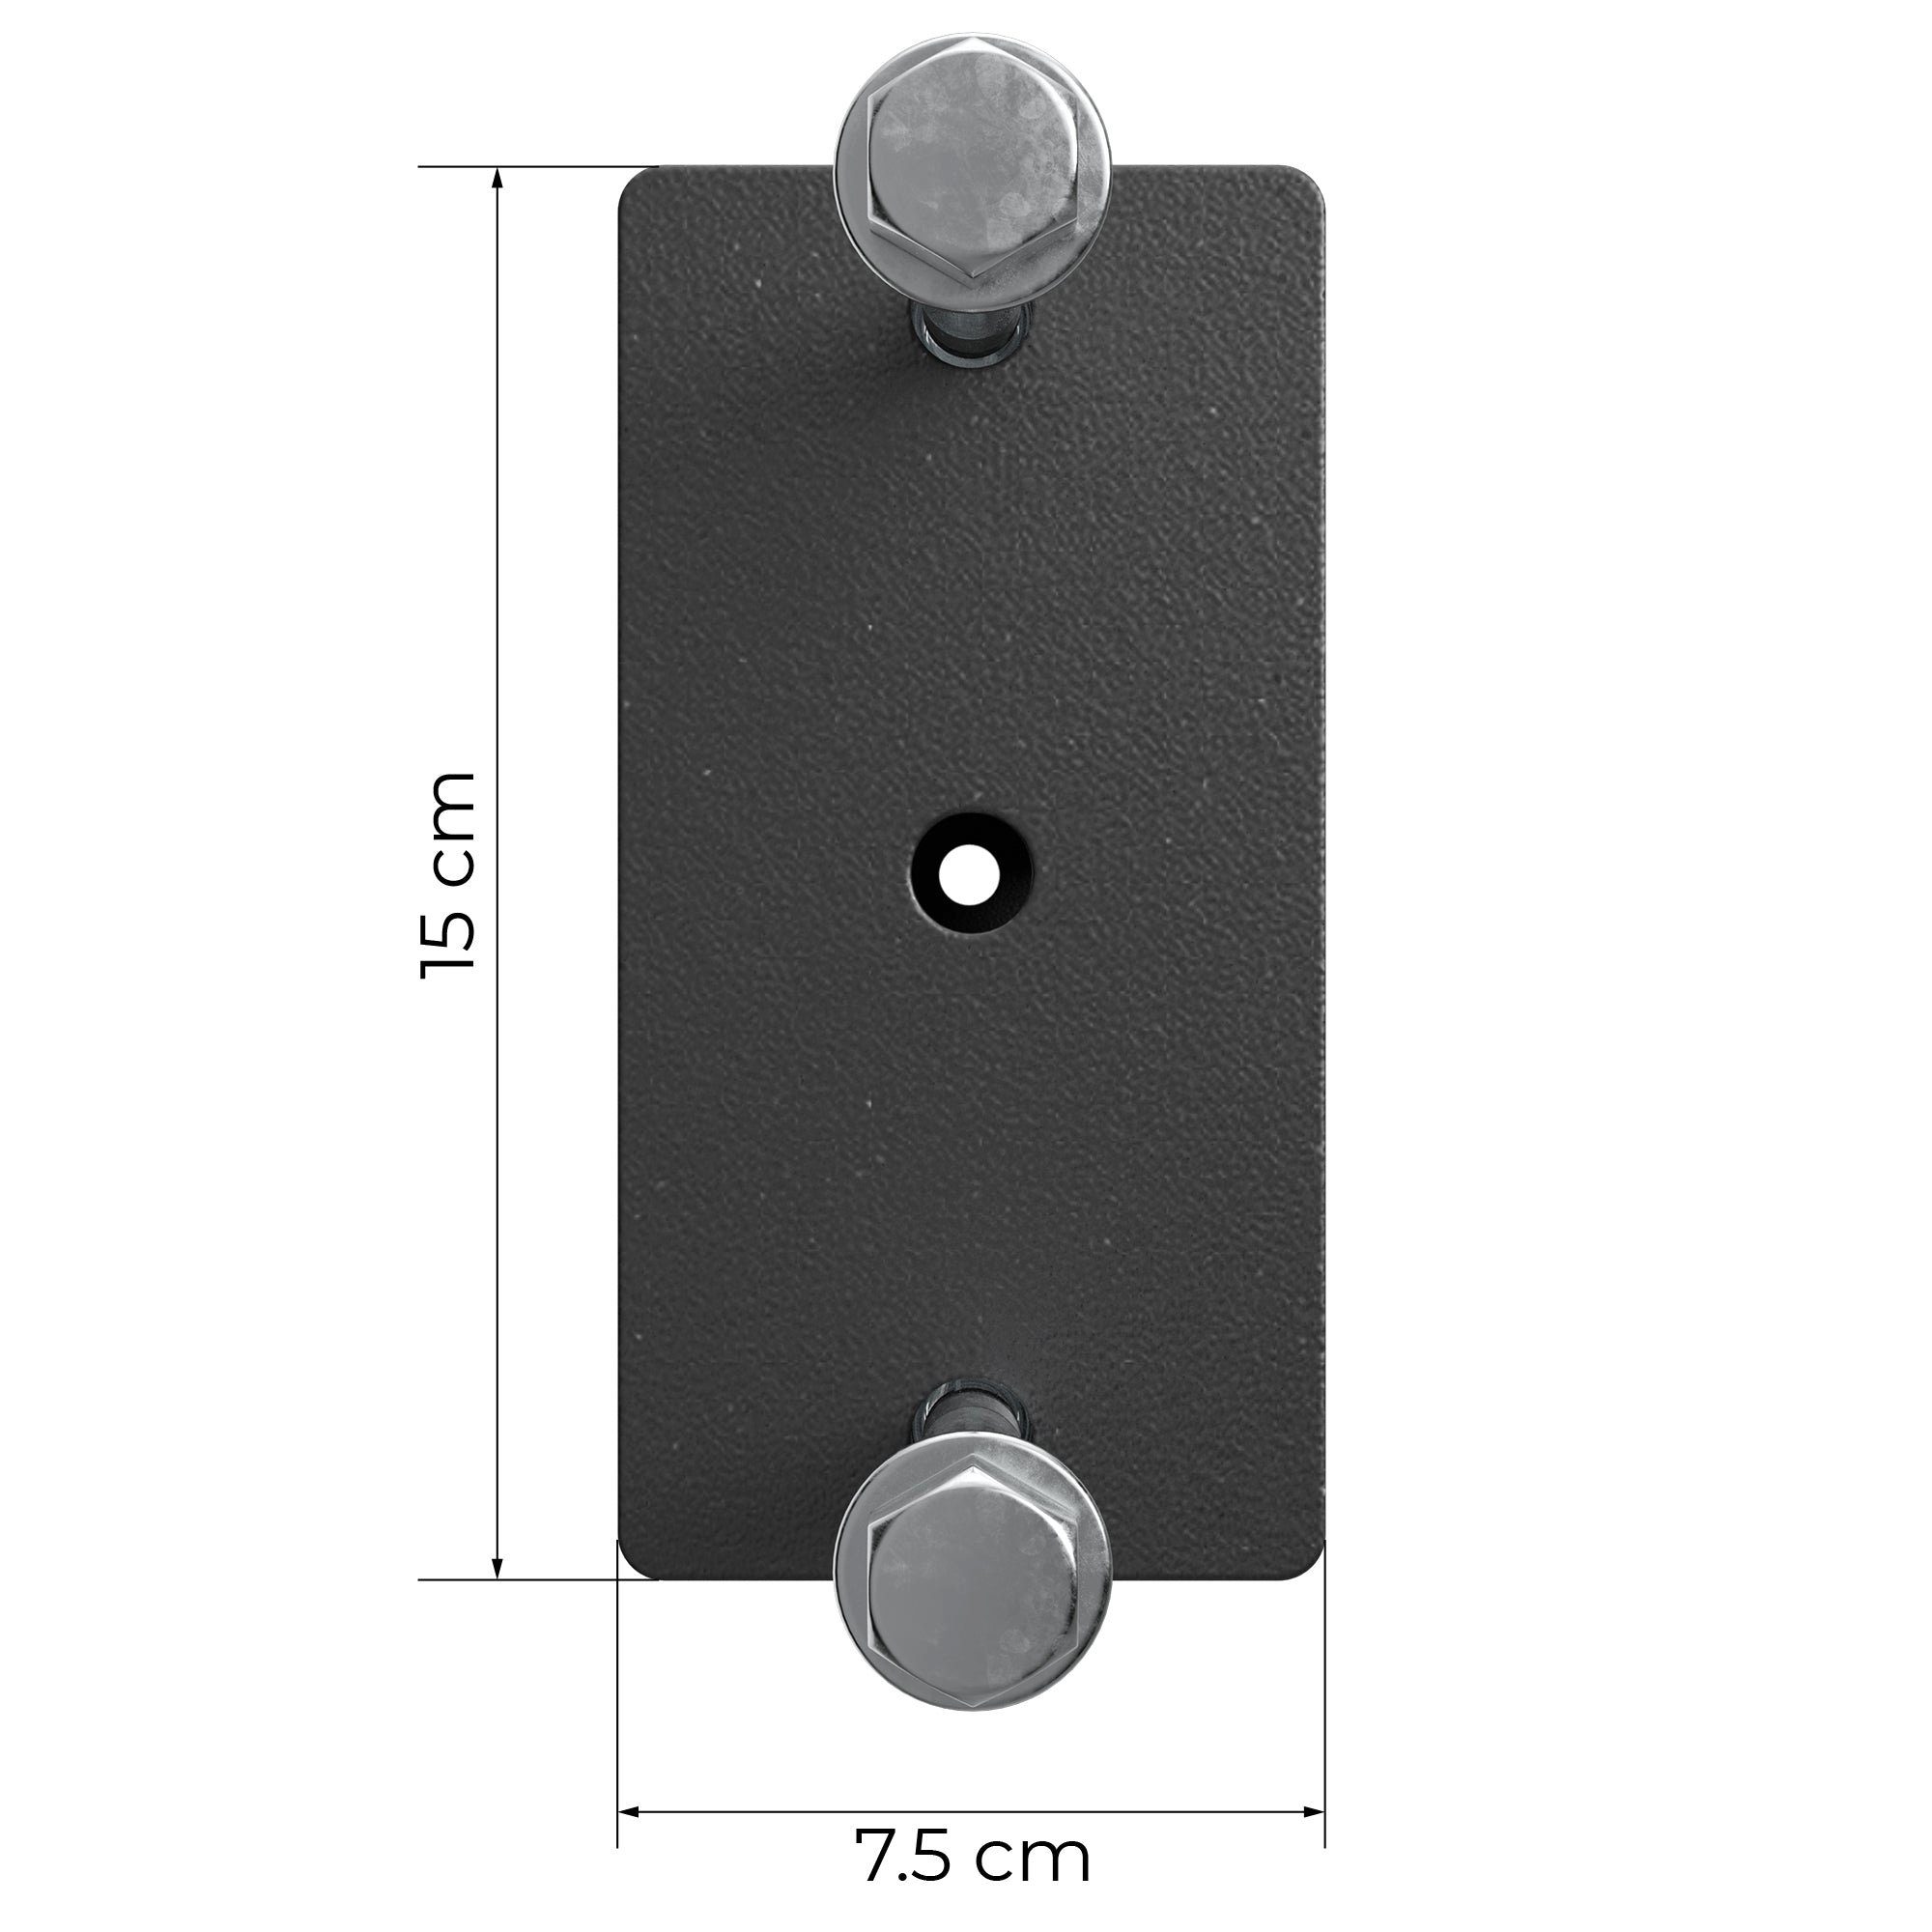 rostfreien black In Rack Farben Paarweise, Power ATLETICA cm 42 Crossbar, verfügbar 2 R8